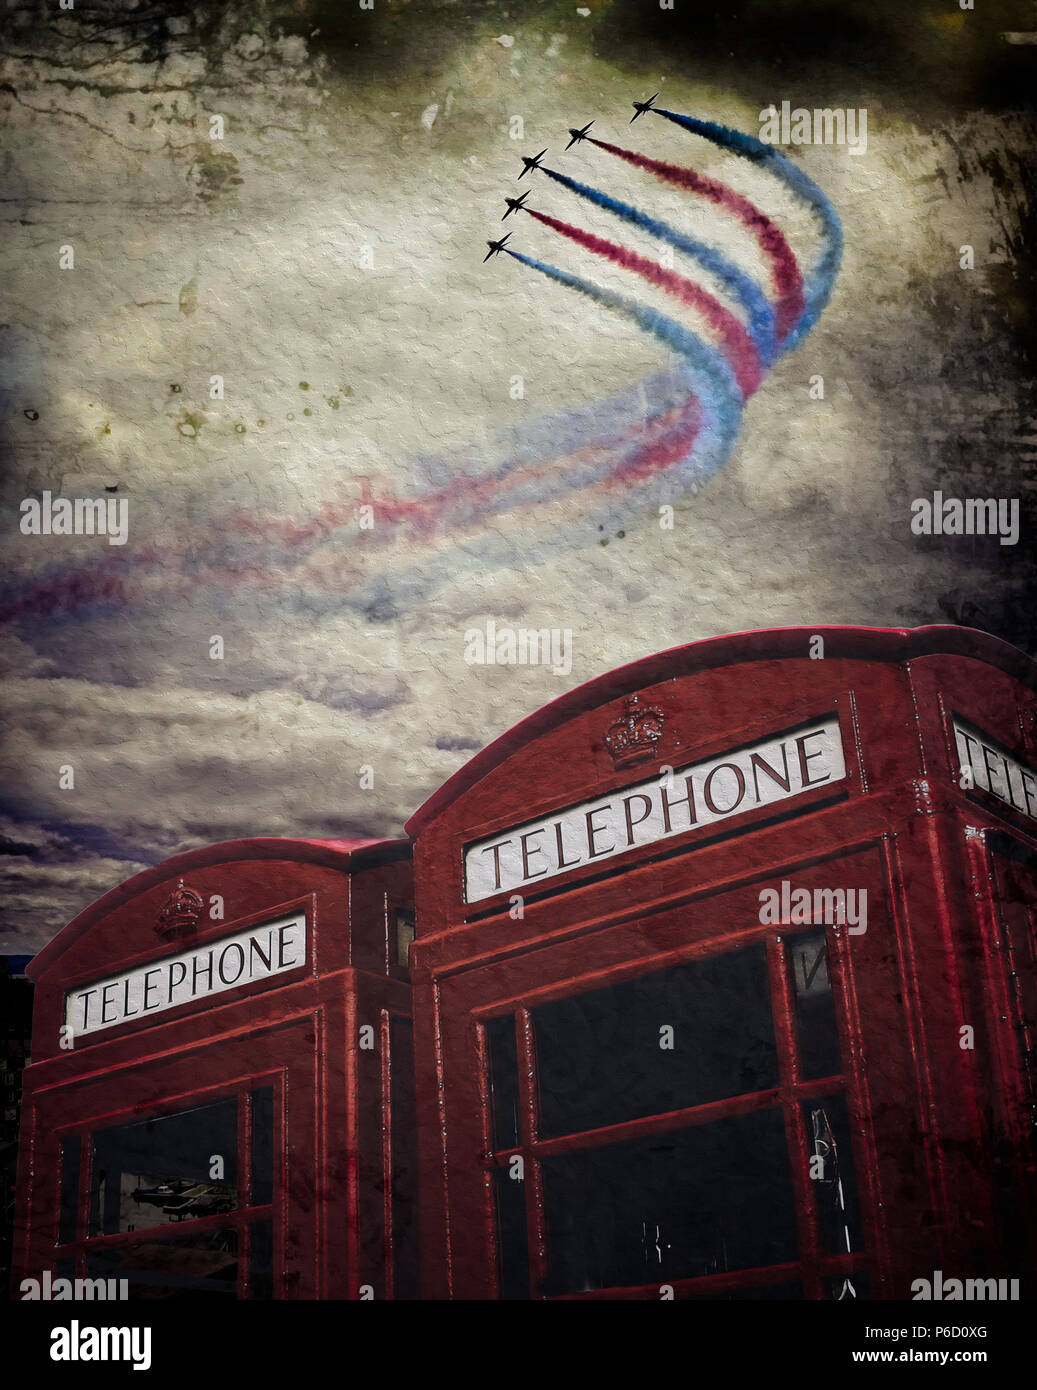 L'art numérique : les flèches rouges de la RAF au-dessus des cabines téléphoniques Banque D'Images